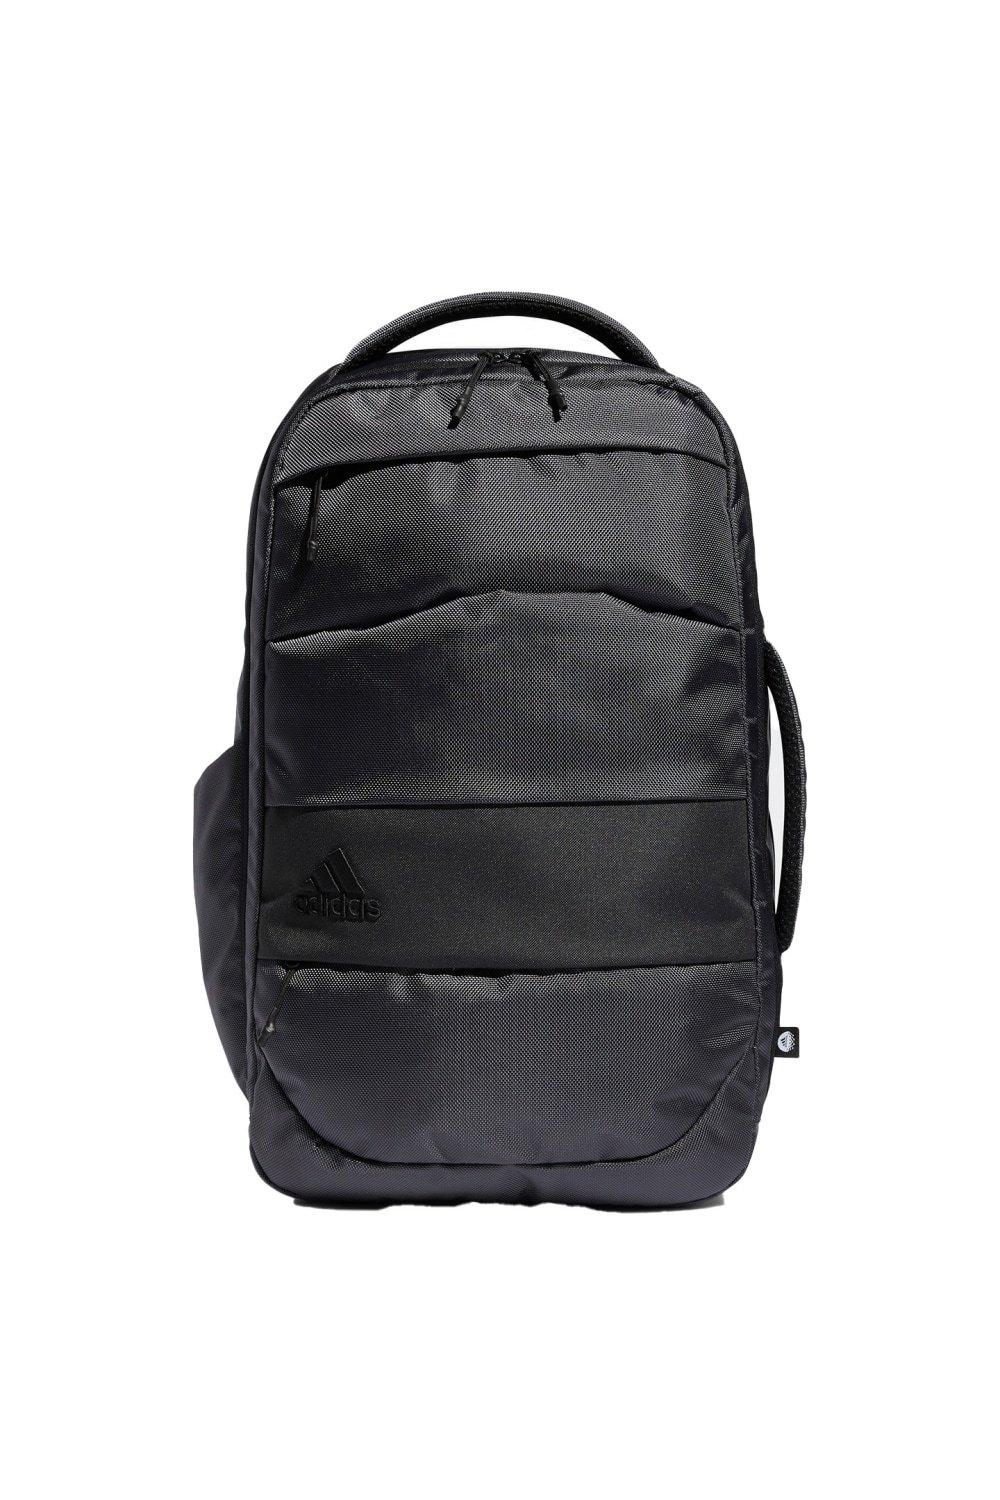 Рюкзак для гольфа премиум-класса Adidas, черный